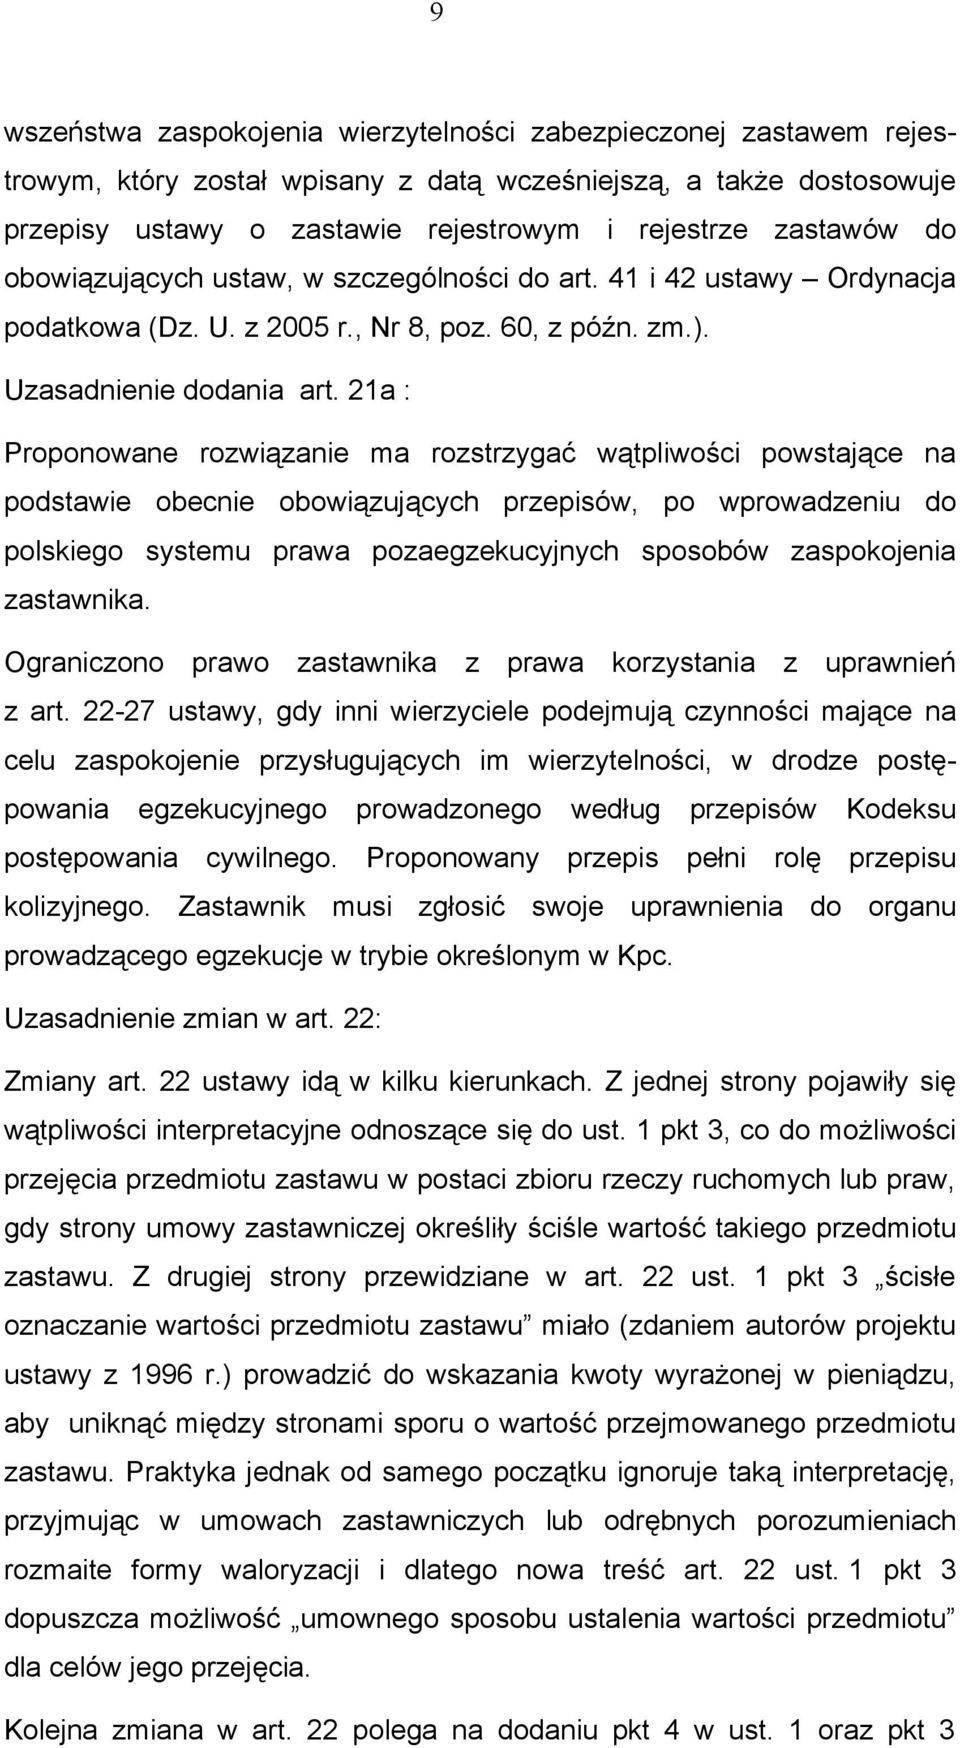 21a : Proponowane rozwiązanie ma rozstrzygać wątpliwości powstające na podstawie obecnie obowiązujących przepisów, po wprowadzeniu do polskiego systemu prawa pozaegzekucyjnych sposobów zaspokojenia